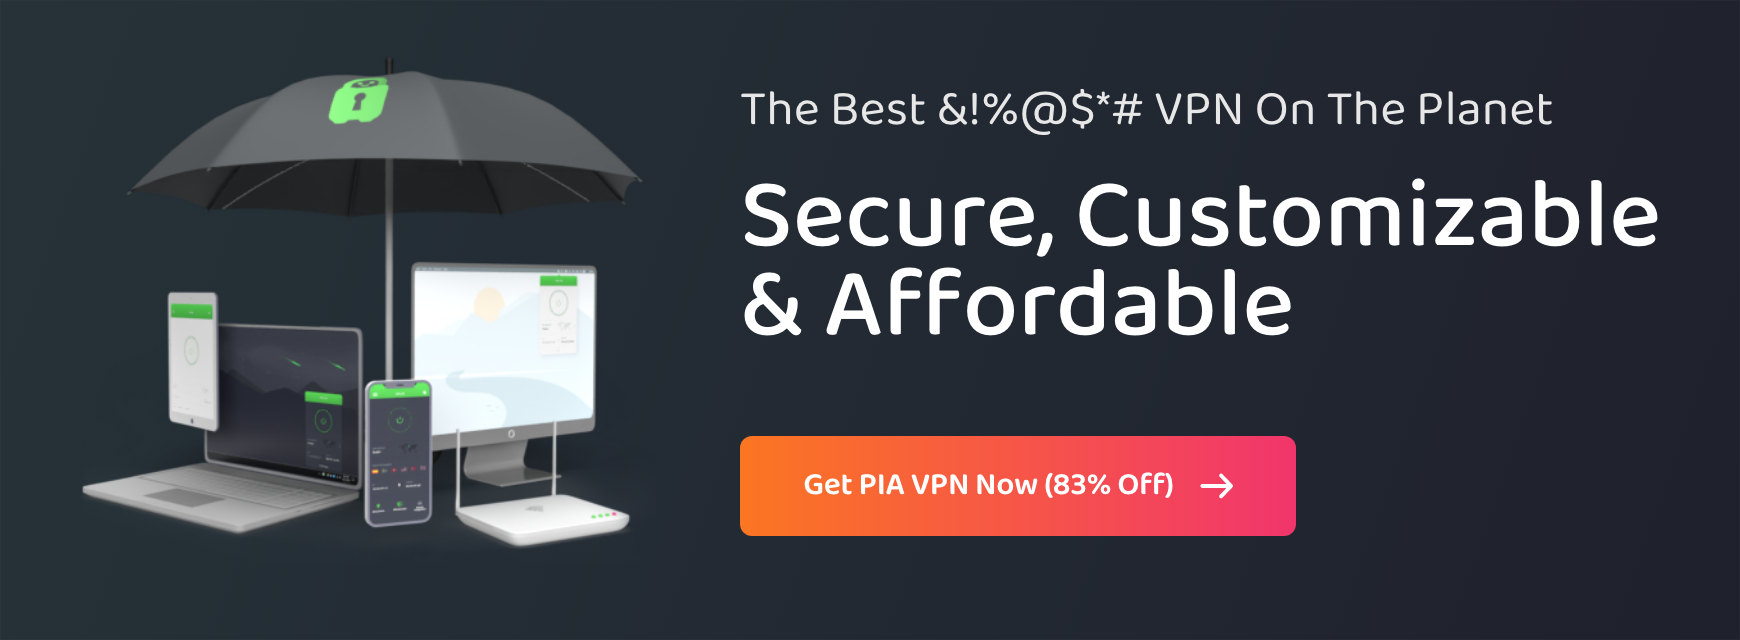 Servicio VPN